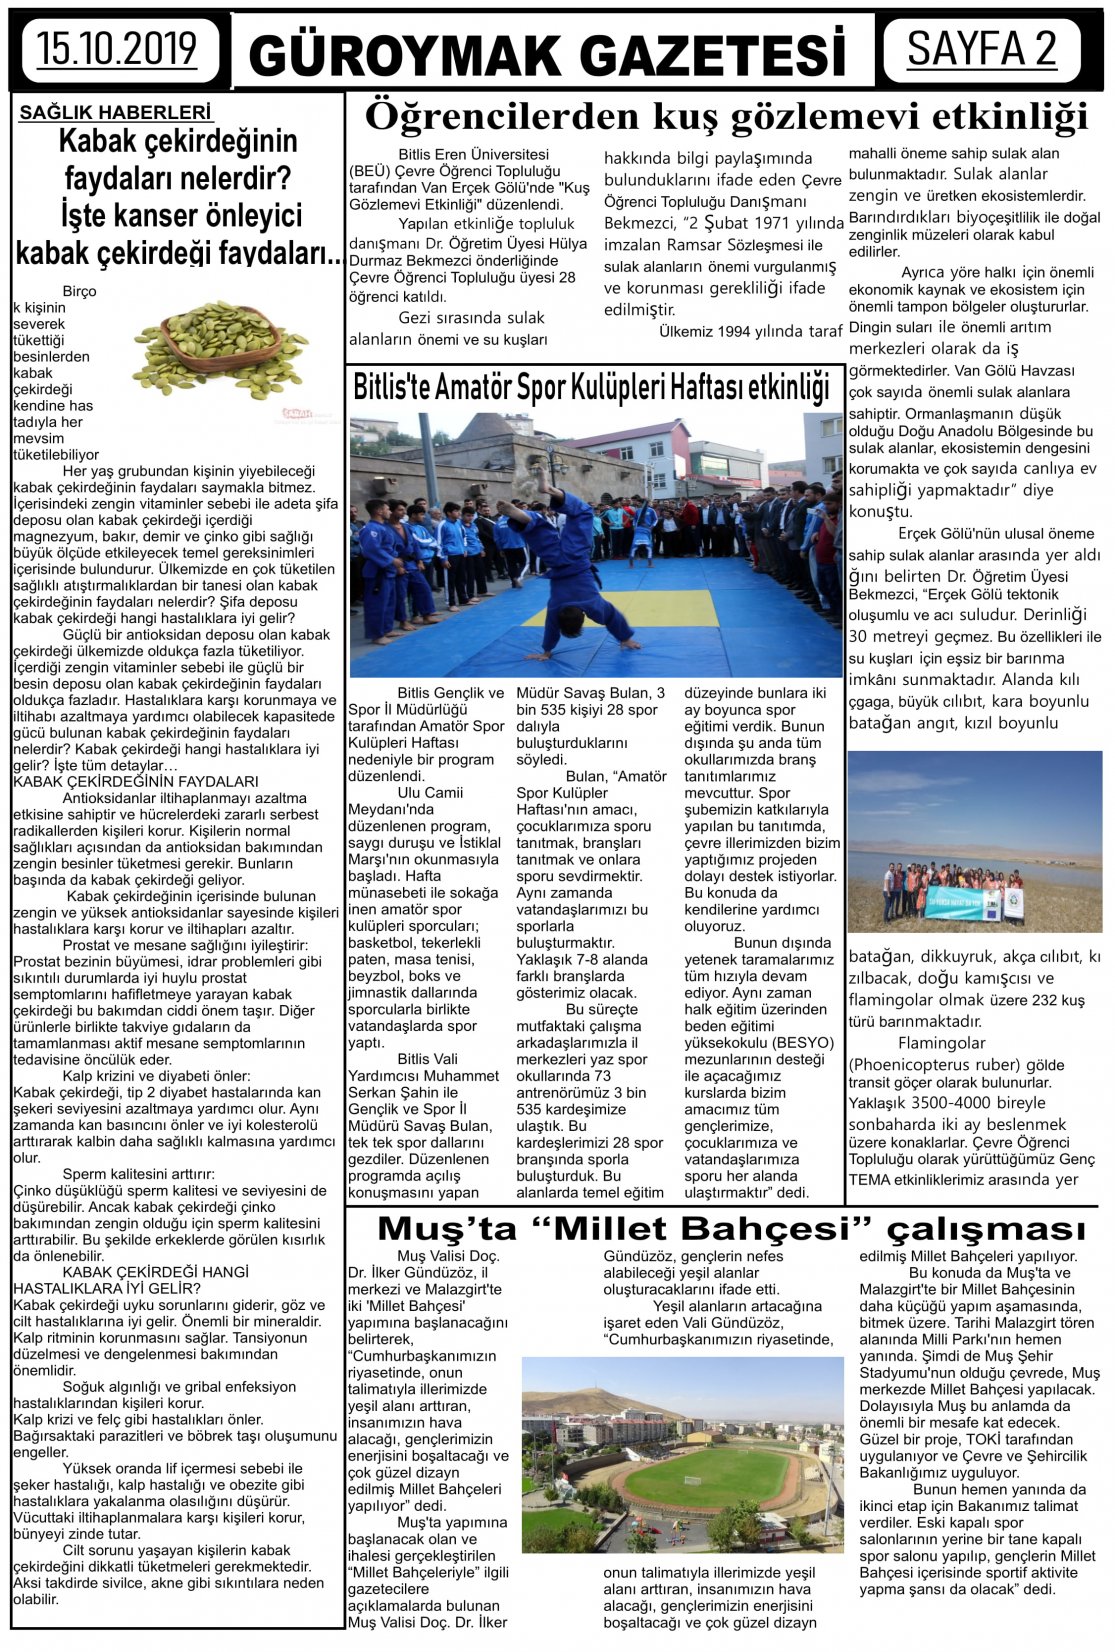 Güroymak Gazetesi 2-1.jpg Sayılı Gazete Küpürü